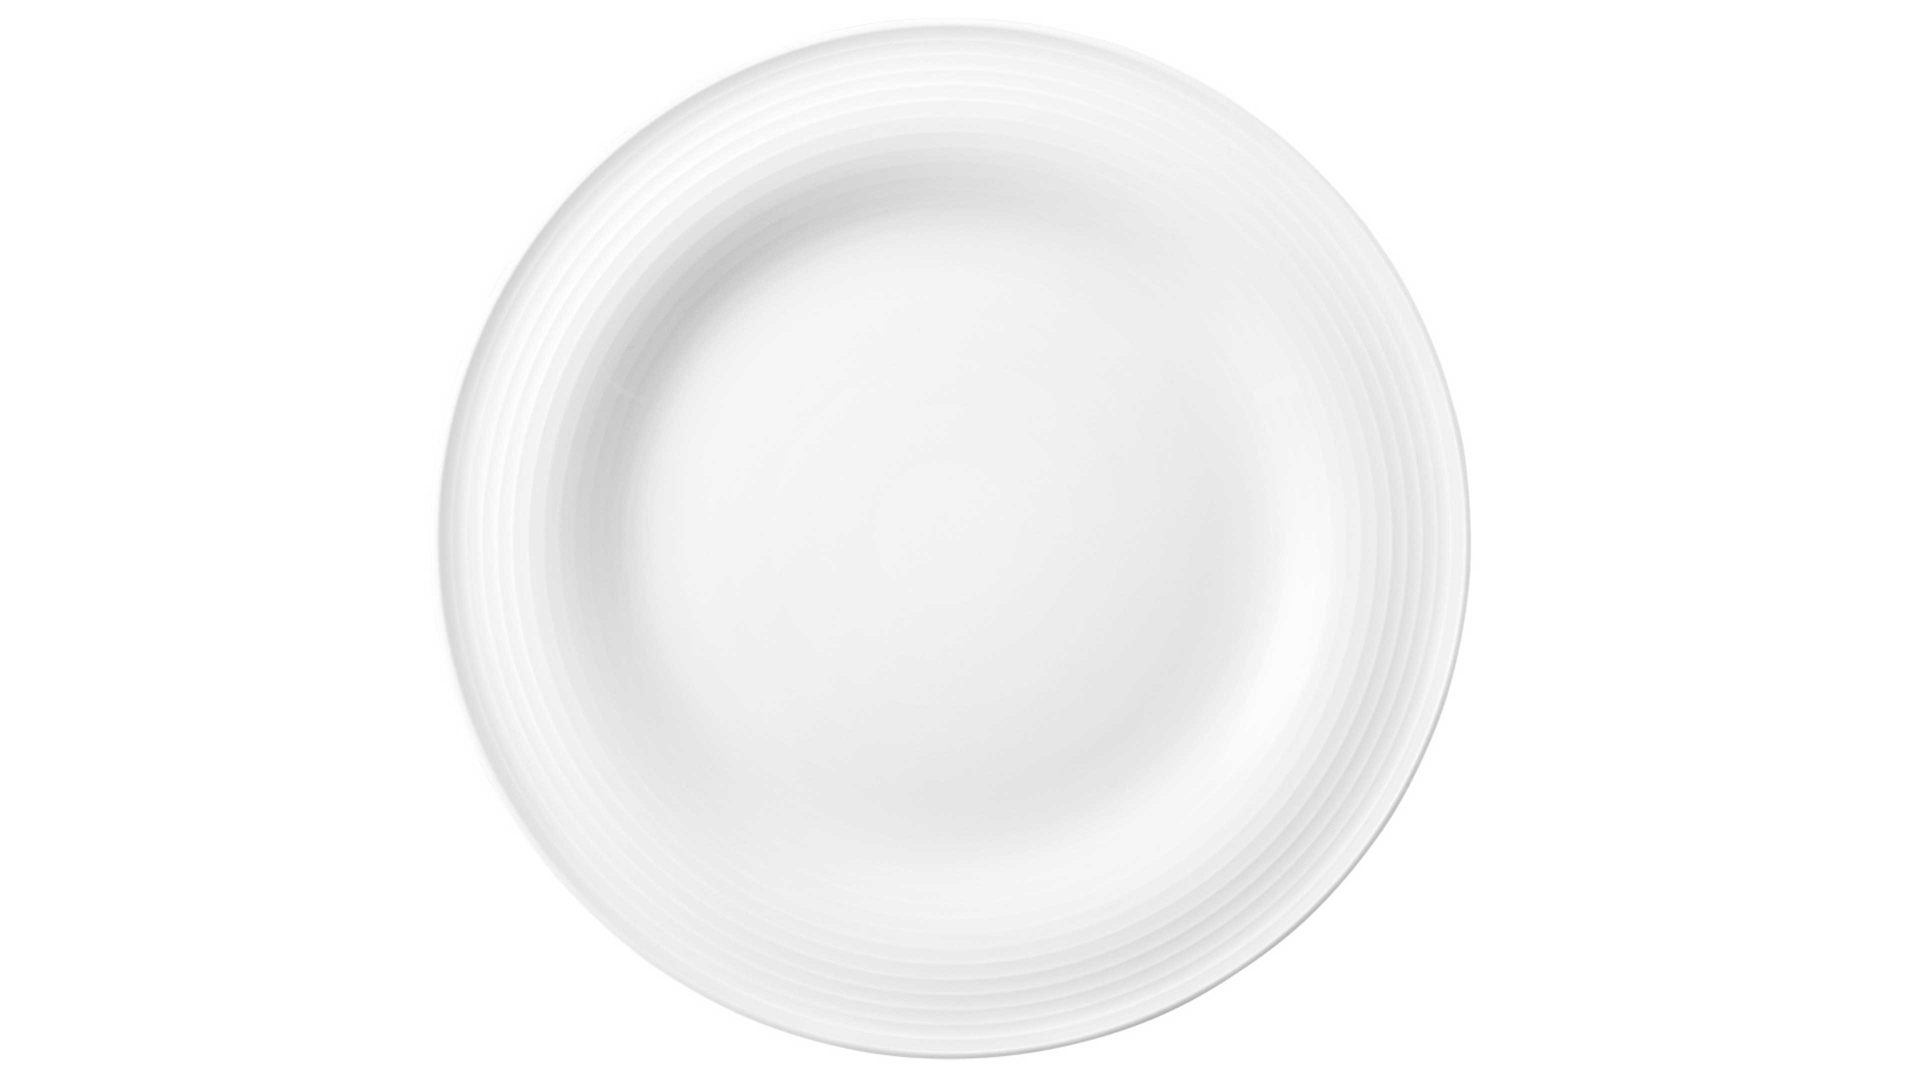 Kuchenteller Seltmann aus Porzellan in Weiß Seltmann Geschirrserie Beat 3 – Frühstücksteller weißes Porzellan – Durchmesser ca. 23 cm